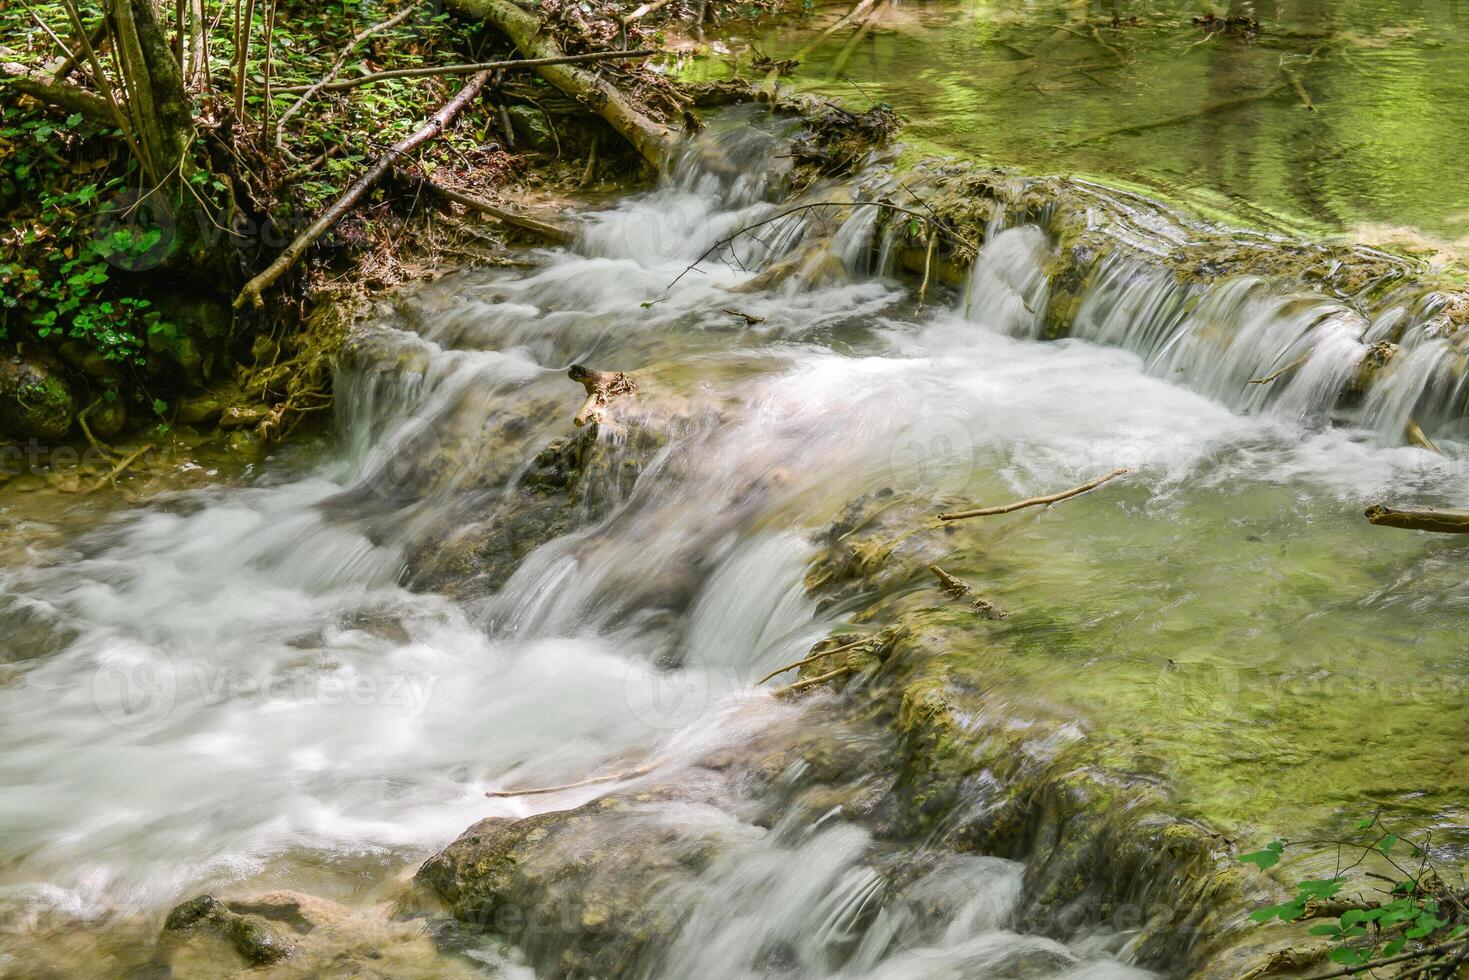 montaña corriente en el bosque - largo exposición y fluido agua foto